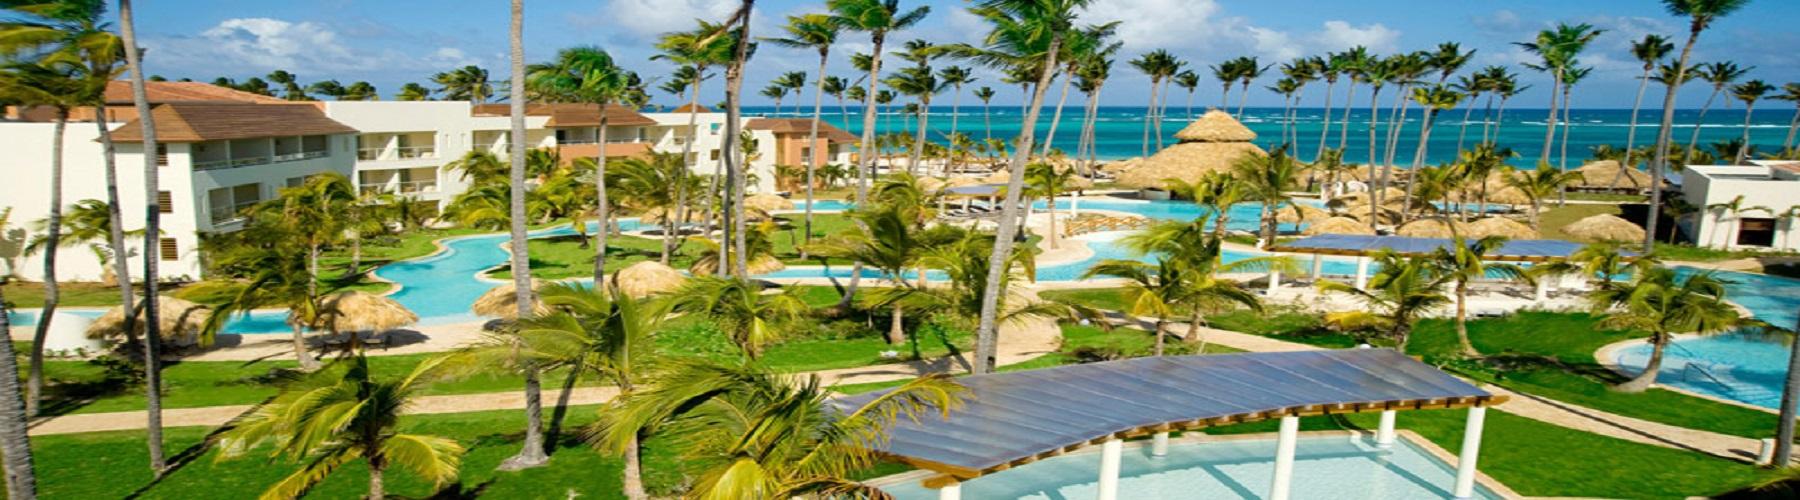 Отель Secrets Royal Beach Punta Cana 5*